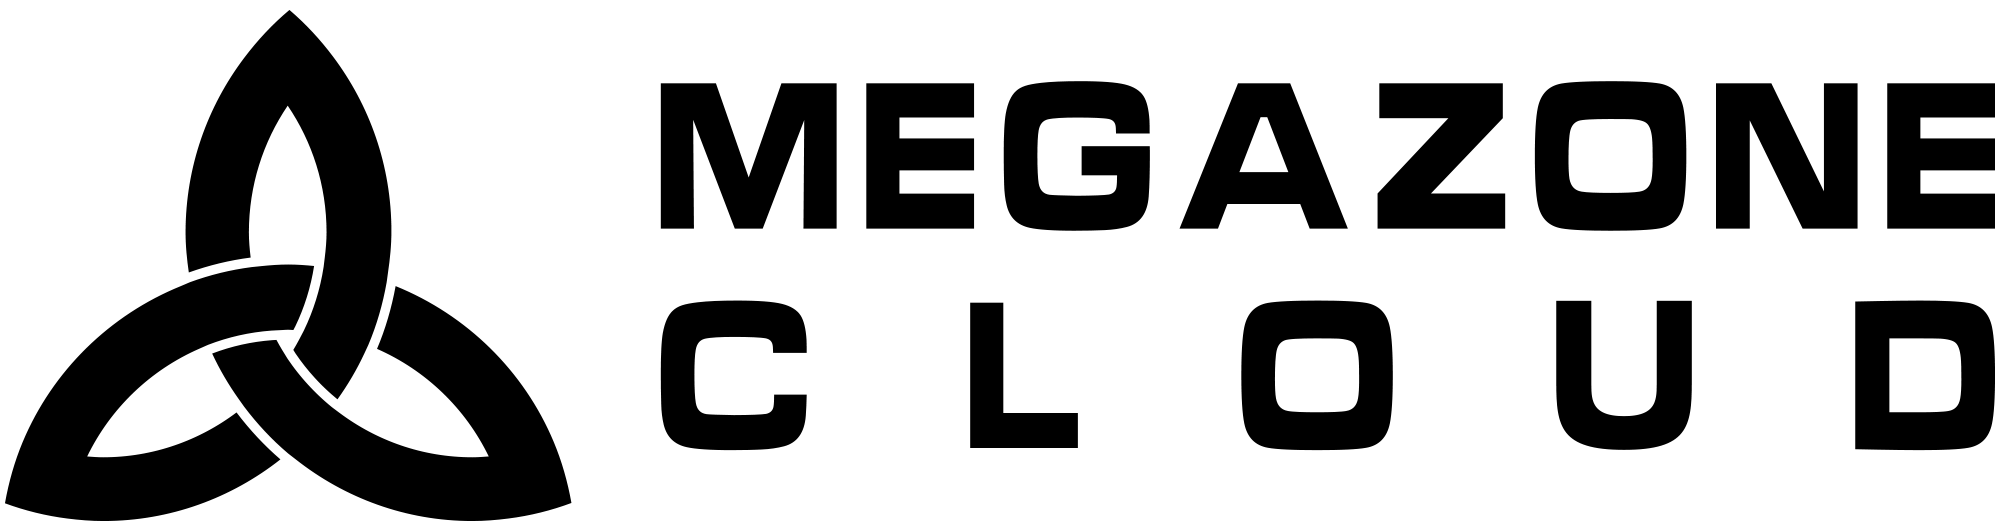 메가존클라우드/ MEGAZONECLOUD Logo